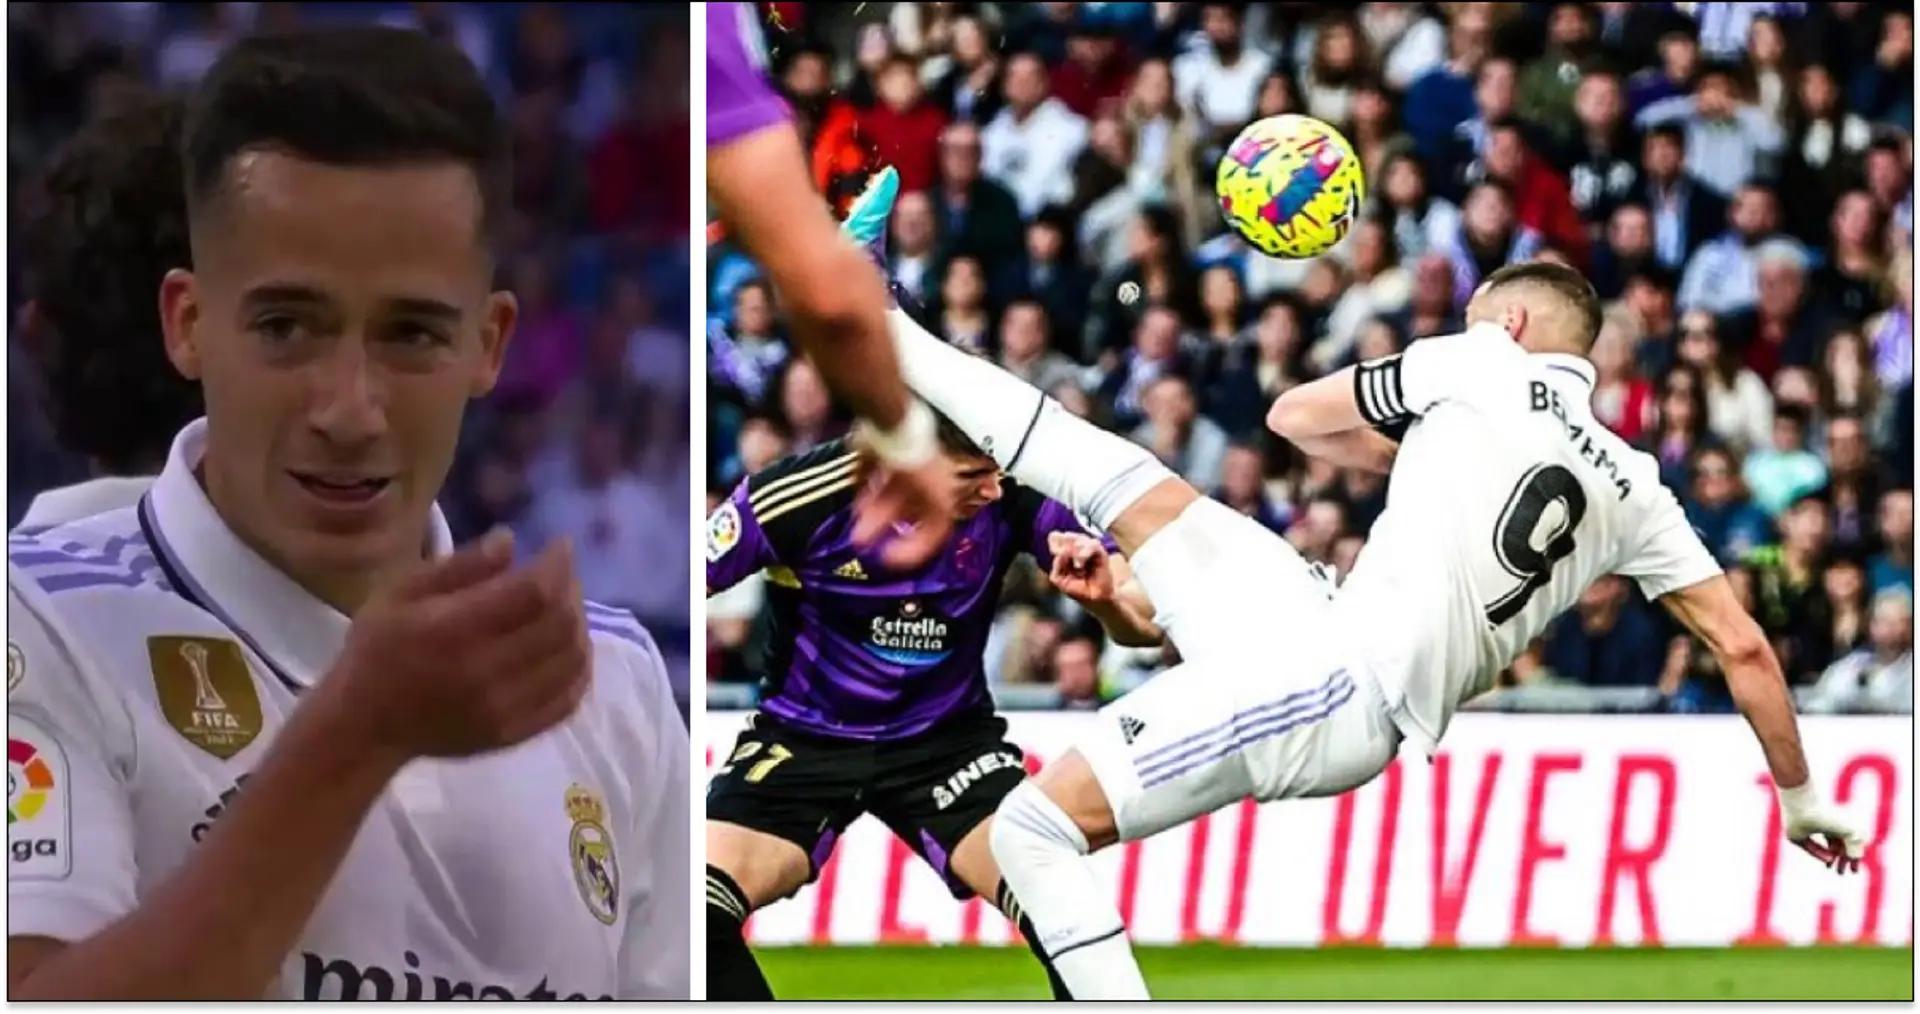 ¿Cuál sería el marcador si Madrid y Valladolid marcaran todas sus oportunidades? Analizado usando estadísticas